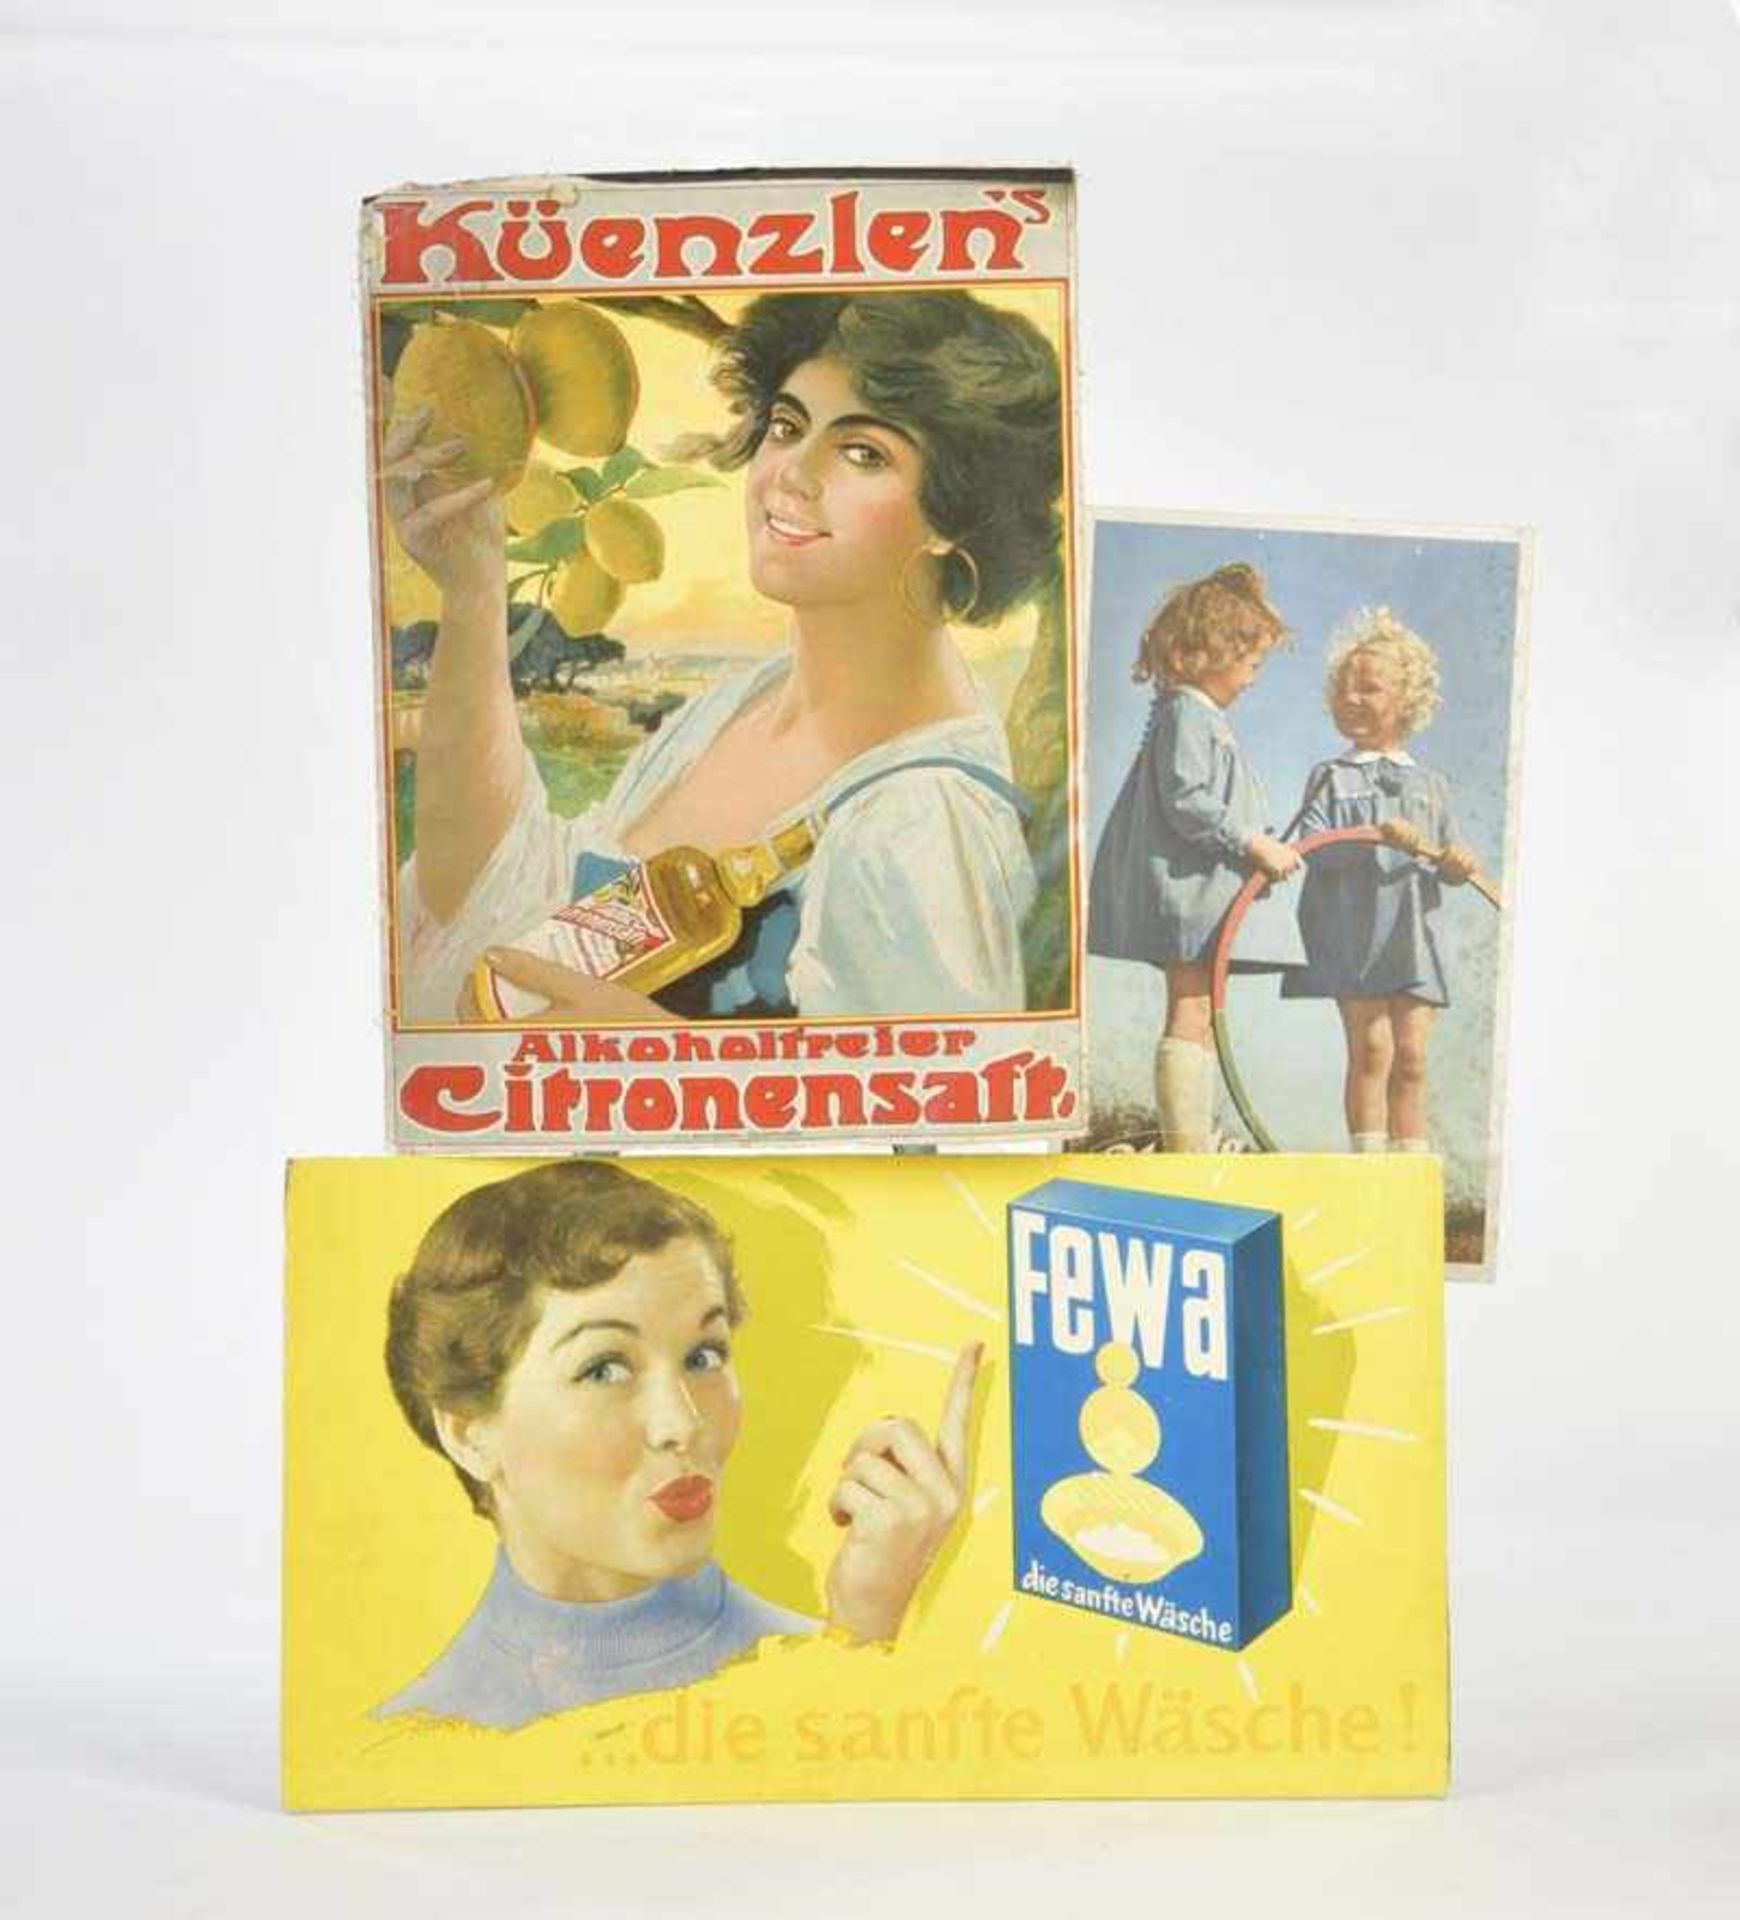 2 Werbeaufsteller + Plakat "Bleyle", "Fewa Wäsche" + "Kuenzlen's Citronensaft", Pappe + Stoff, Z 2-